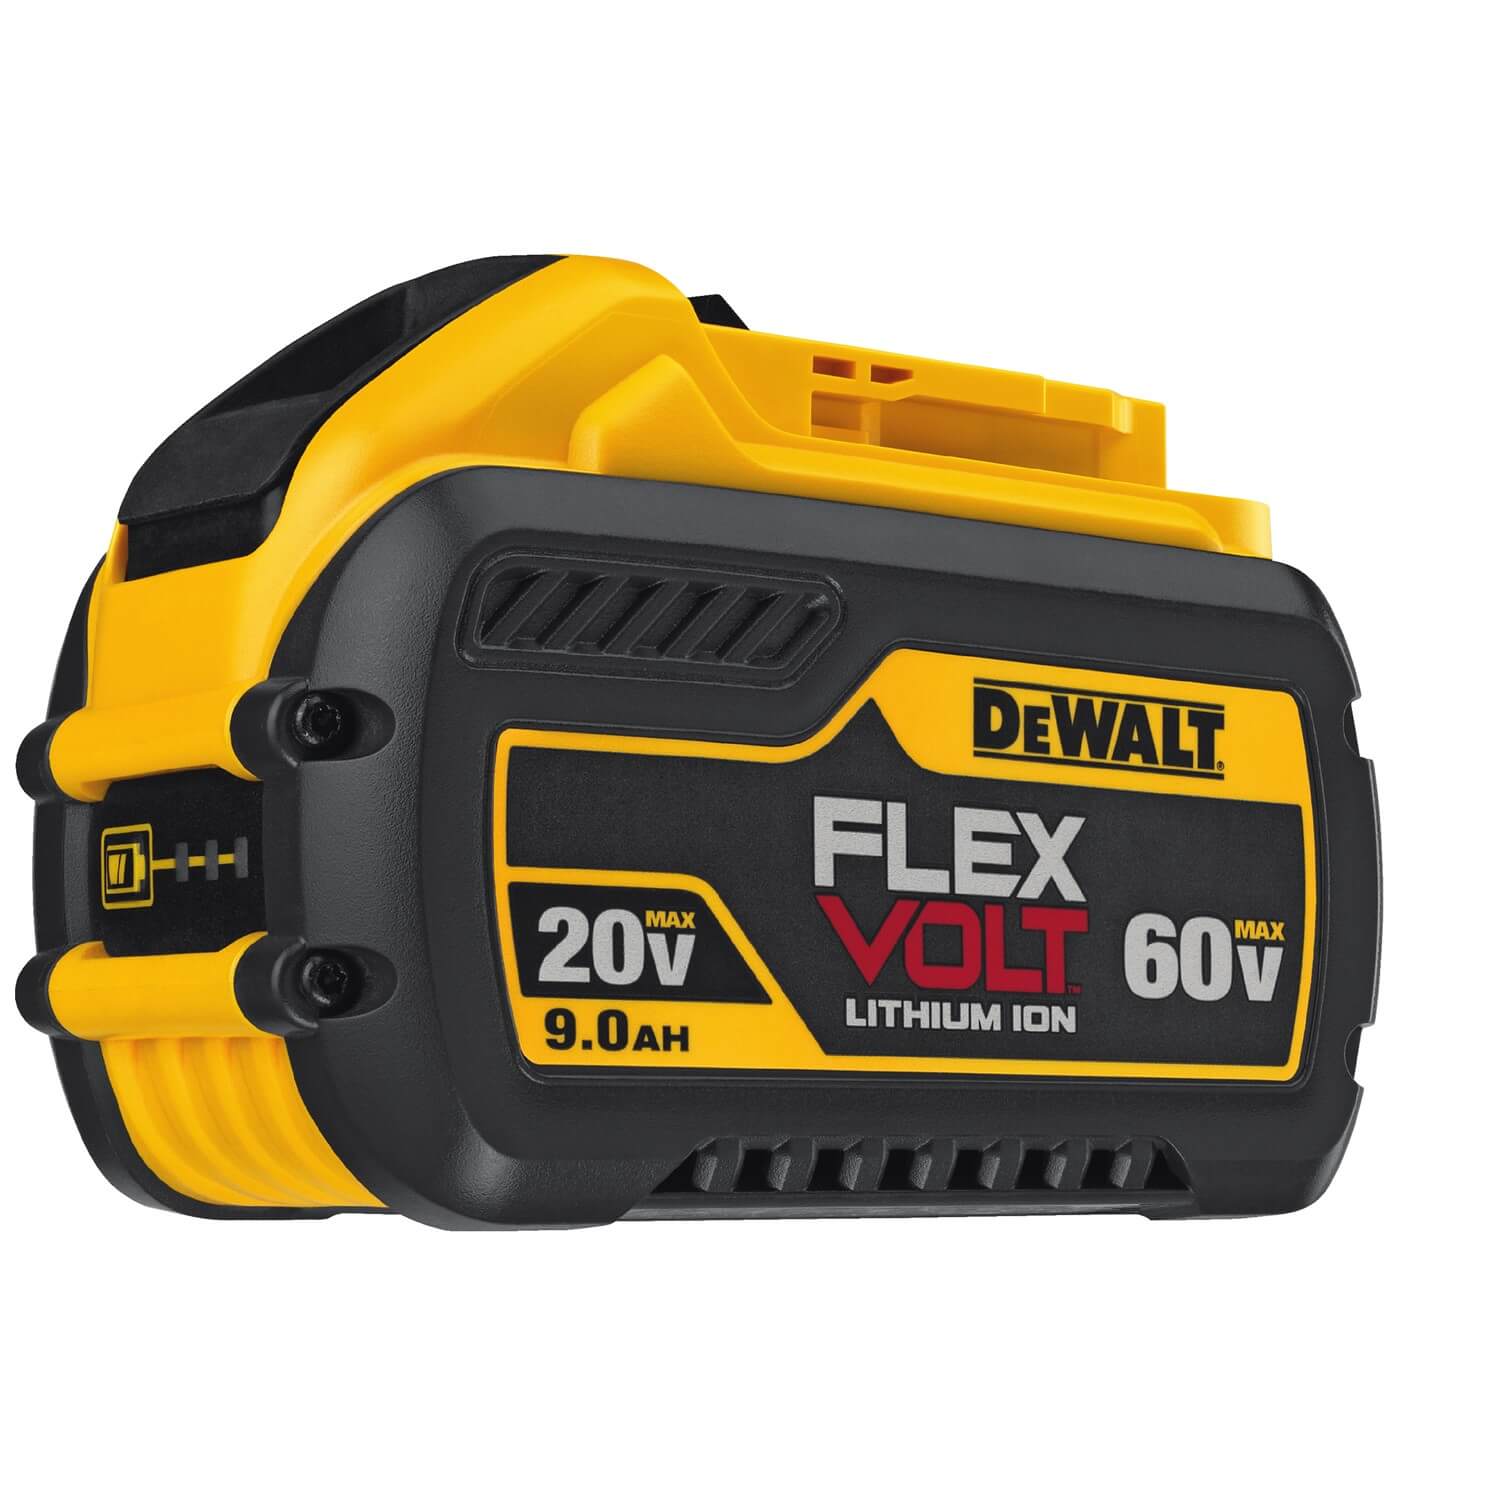 DeWalt DCB609 - 60V FlexVolt 9.0Ah Battery - wise-line-tools